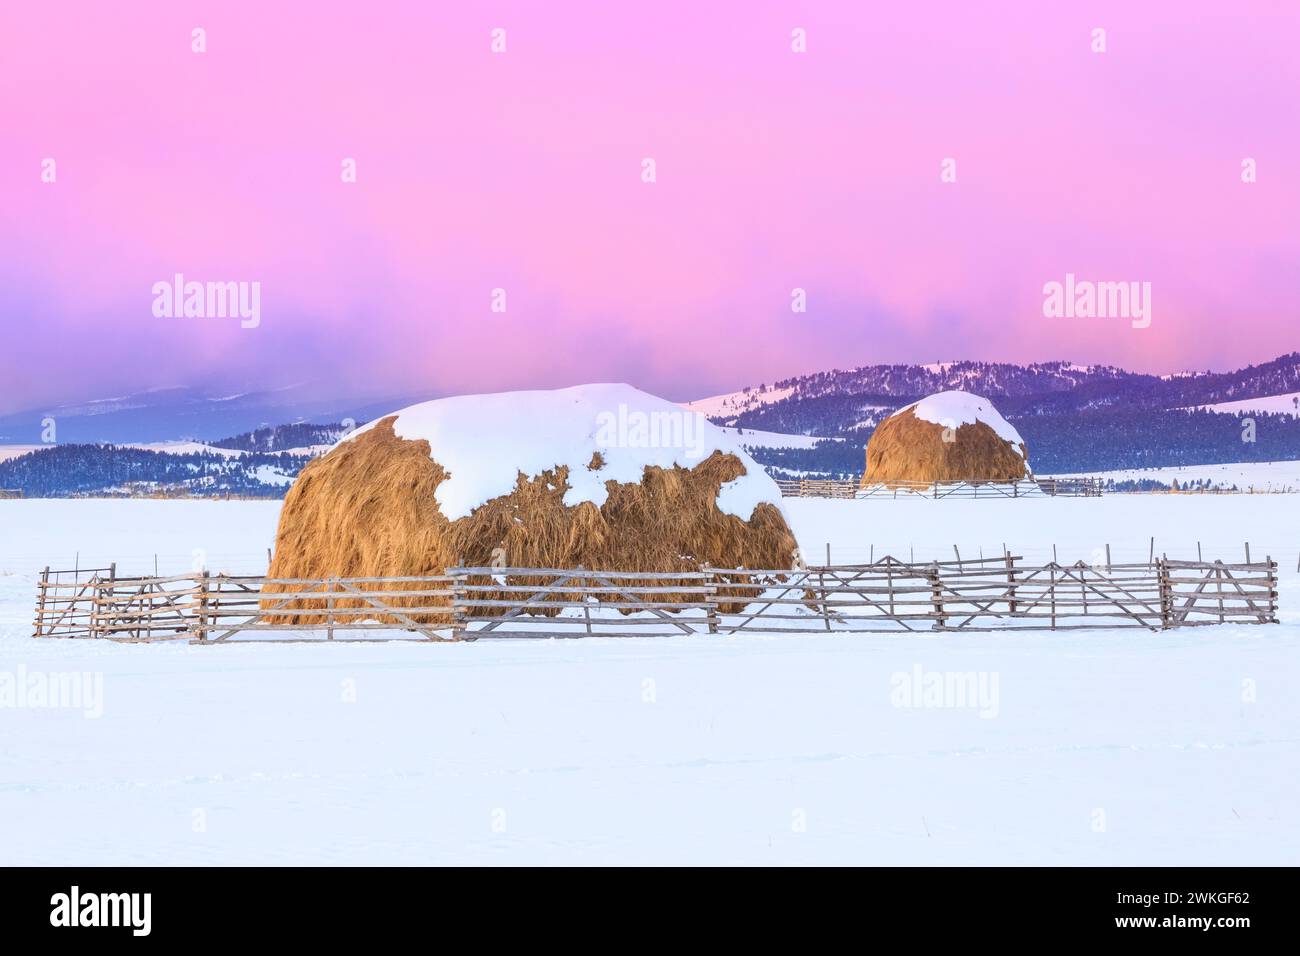 lever du soleil sur des bottes de foin en hiver près d'avon, montana Banque D'Images